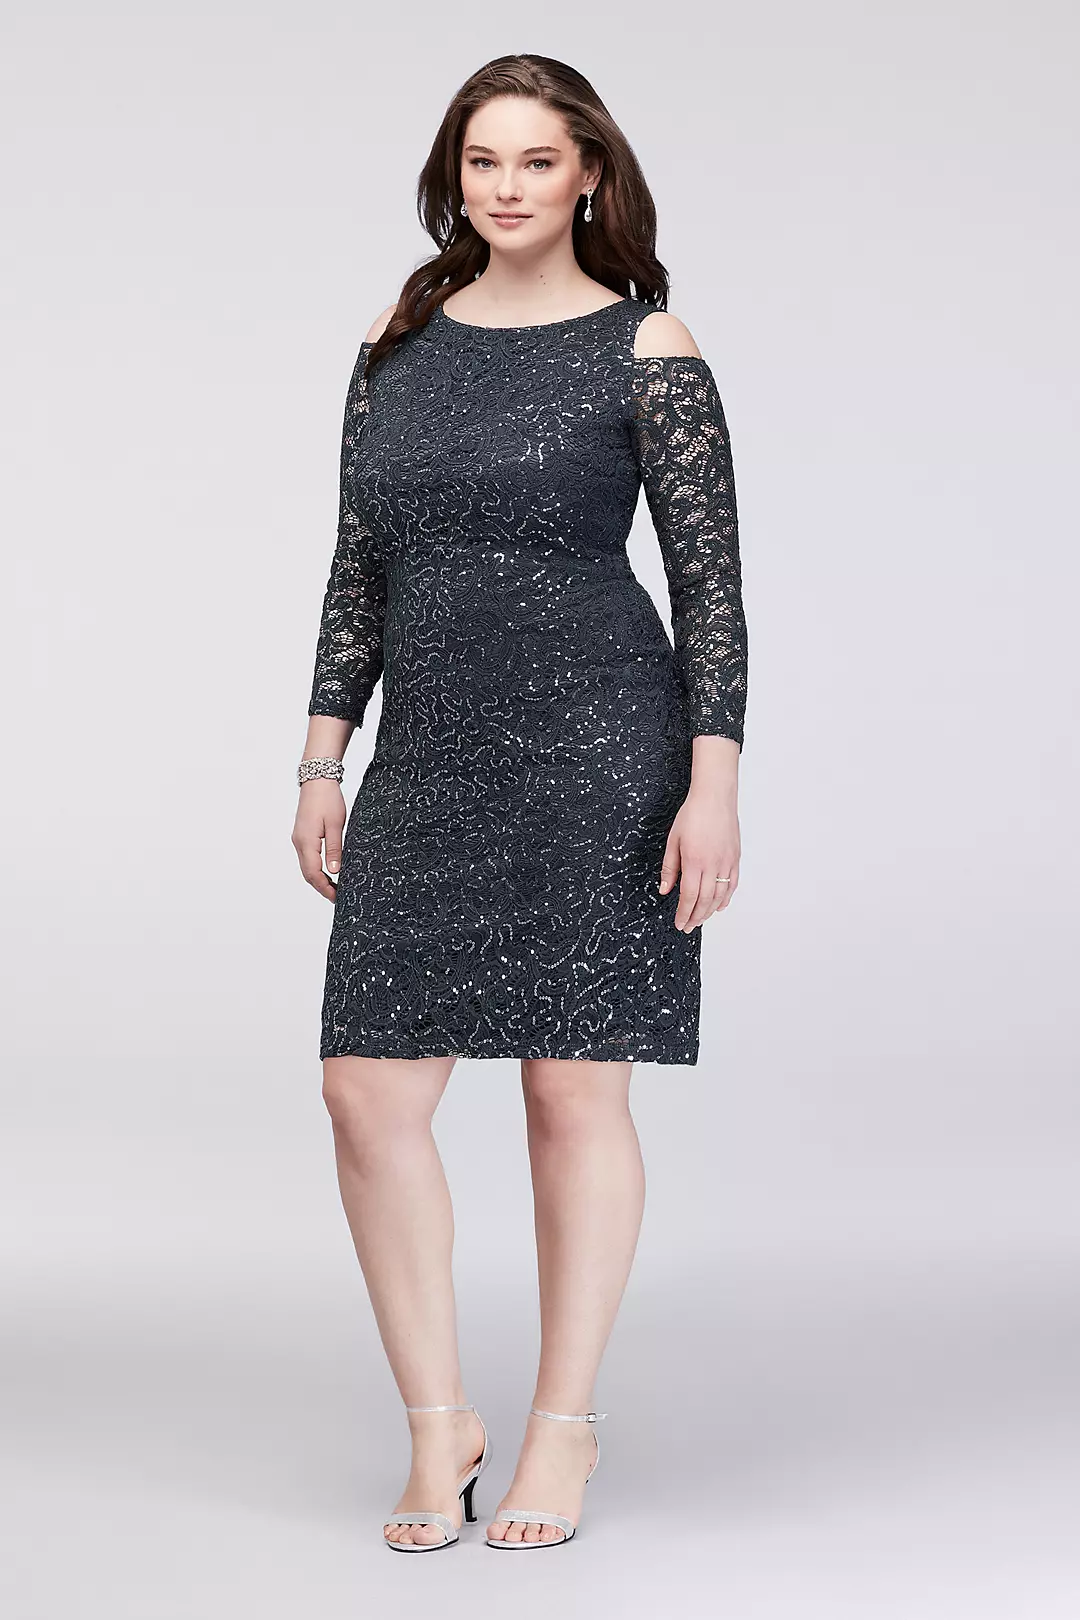 Cold-Shoulder Lace Plus Size Cocktail Dress Image